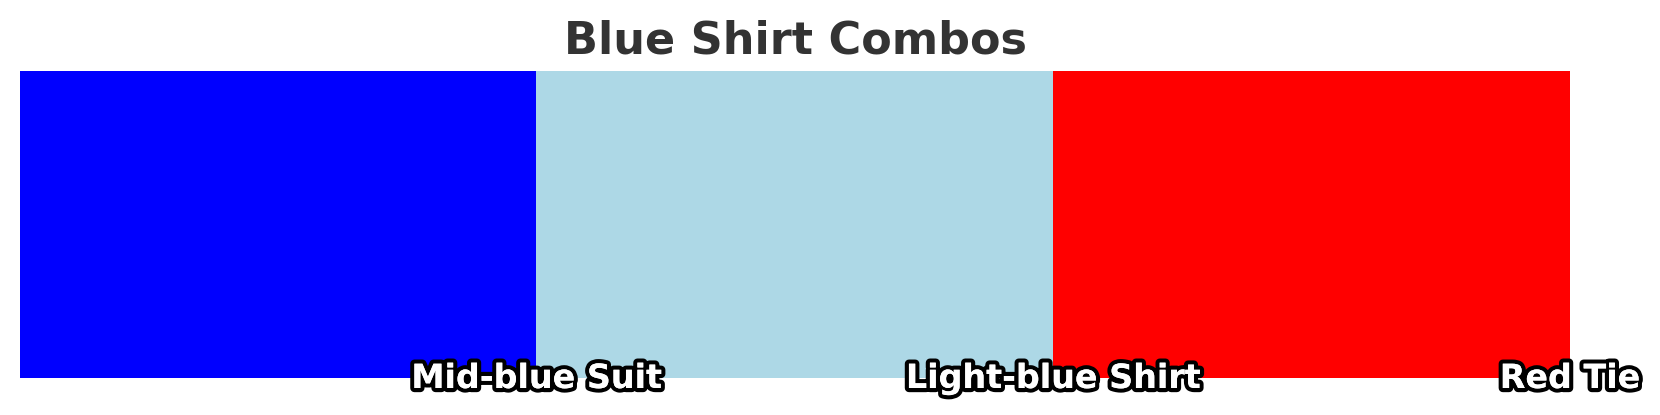 light blue shirt combo